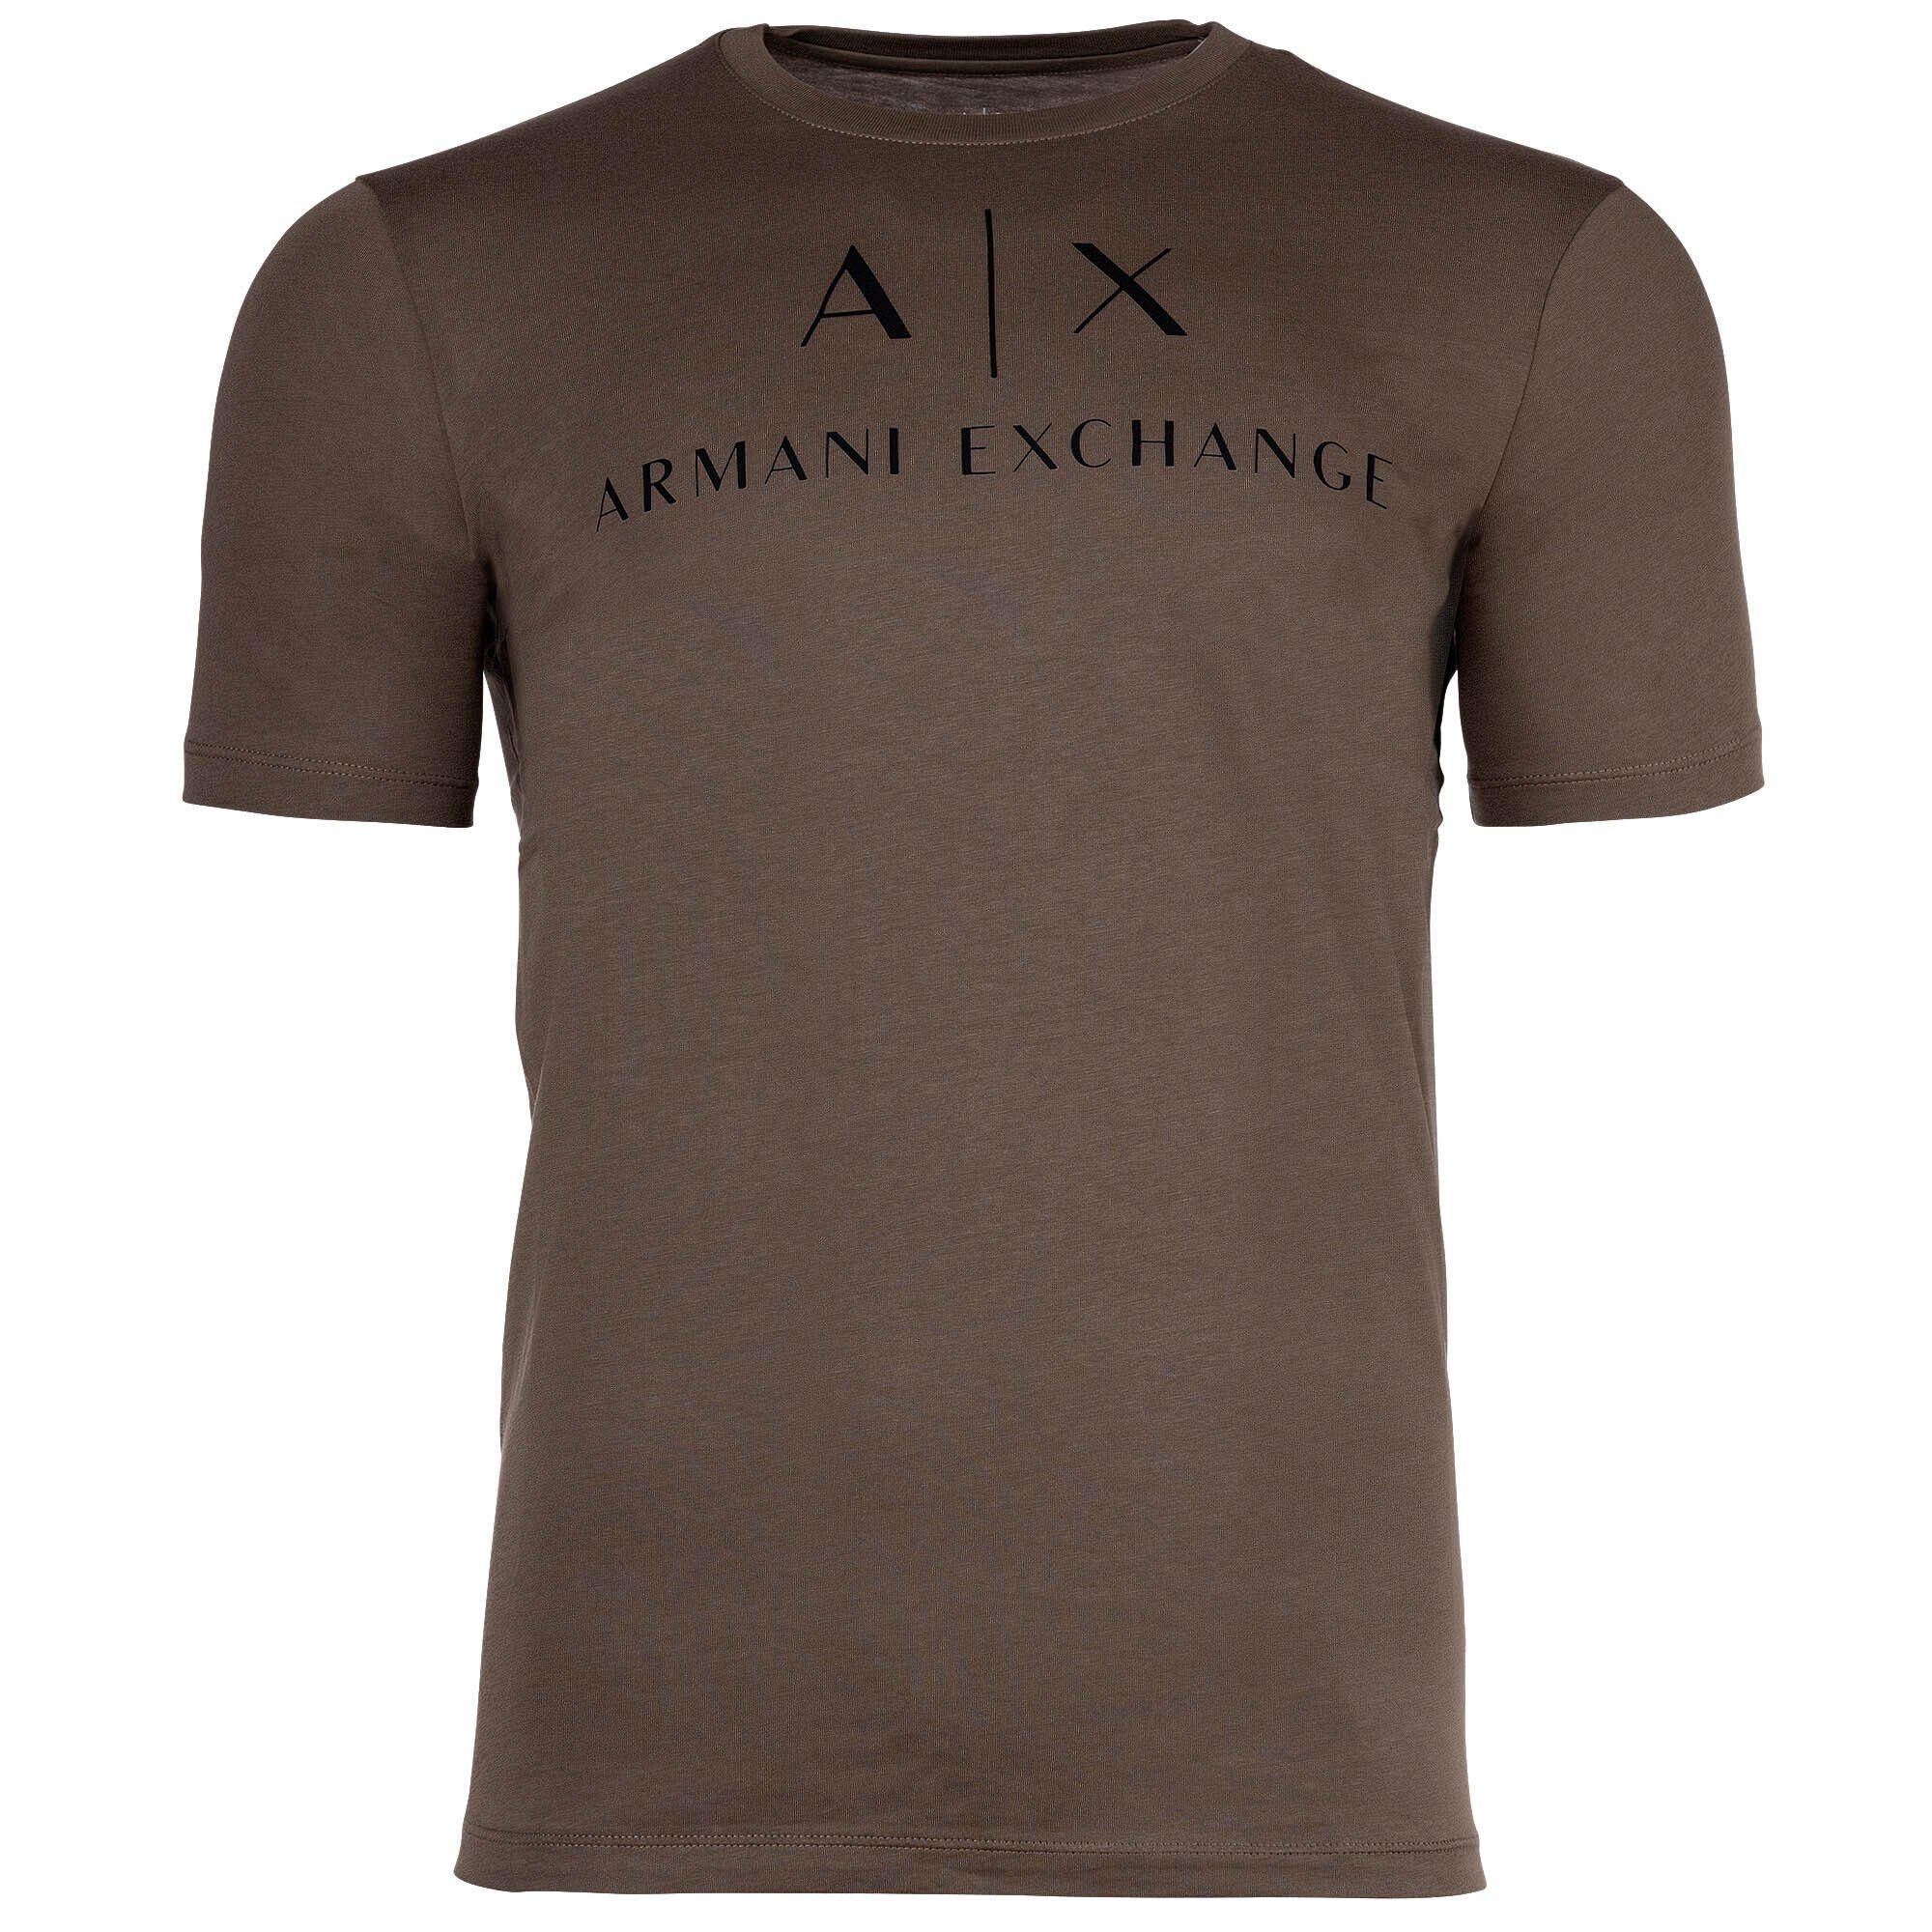 ARMANI EXCHANGE T-Shirt Herren T-Shirt - Schriftzug, Rundhals, Cotton Khaki (Crocodile)